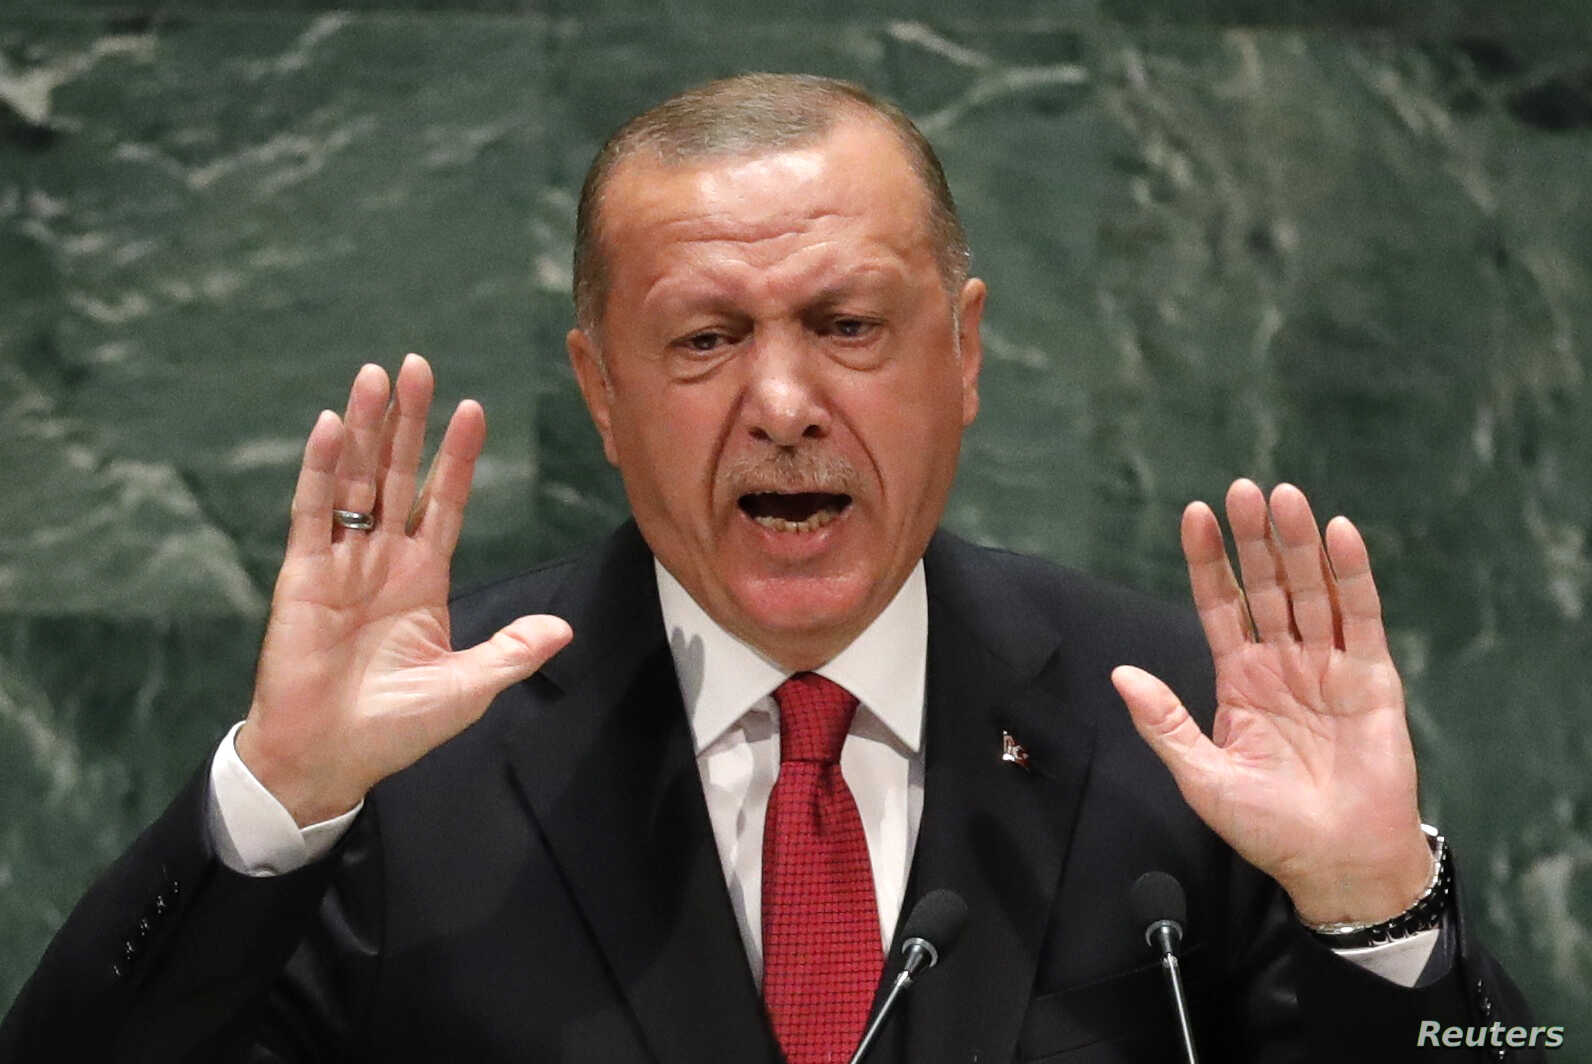 США должны понять, что это серьезный удар по отношениям между Анкарой и Вашингтоном, и заявления Байдена не являются бесследными: Эрдоган